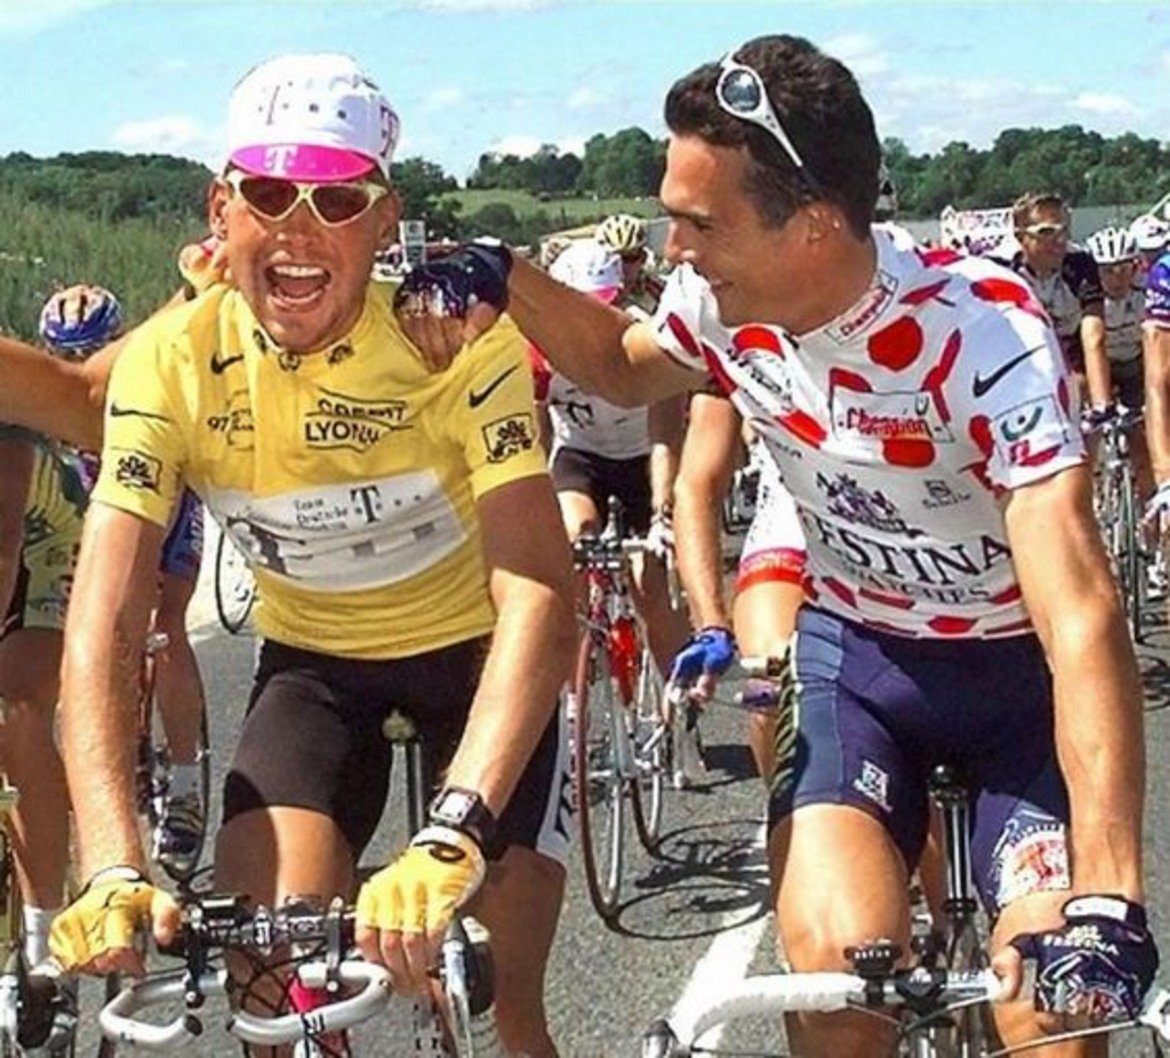 Колко струва победата в Куршевел

През 1997 г. един от най-тежките етапи в Обиколката на Франция се явява изкачването на планинския курорт Куршевел. Оказва се, че състезателят на домакините Ришар Виренк си е купил победата като банани в супермаркет. Около 13 км преди финала Виренк предлага в движение подкуп от 20 000 долара на водача в колоната Ян Улрих. Срещу това опонентът трябва да му остави етапната победа. Разбира се, Улрих няма нищо против да прибере парите и да отстъпи първото място в етапа на французина. 
Впоследствие пред Виренк се открива възможност дори да спечели тура, след като лидерът Улрих получава стомашно-чревно възпаление, довело до спад във формата му. Бруно Русел, спортен директор на „Фестина“, свидетелства: „На своя глава, без да се консултира с ръководството на екипа, Виренк се опита да вербува с 10 000 долара италианеца Марко Пантани, които срещу това трябваше да му помага тактически в надпреварата с Улрих и да се откаже от евентуални етапни победи. Останах потресен не заради очевидния опит за подкуп, а заради нищожния размер на предложената сума. Казах му: „Ти шегуваш ли се?“. Не може да предлагаш само 10 000 на Пантани!“ 
